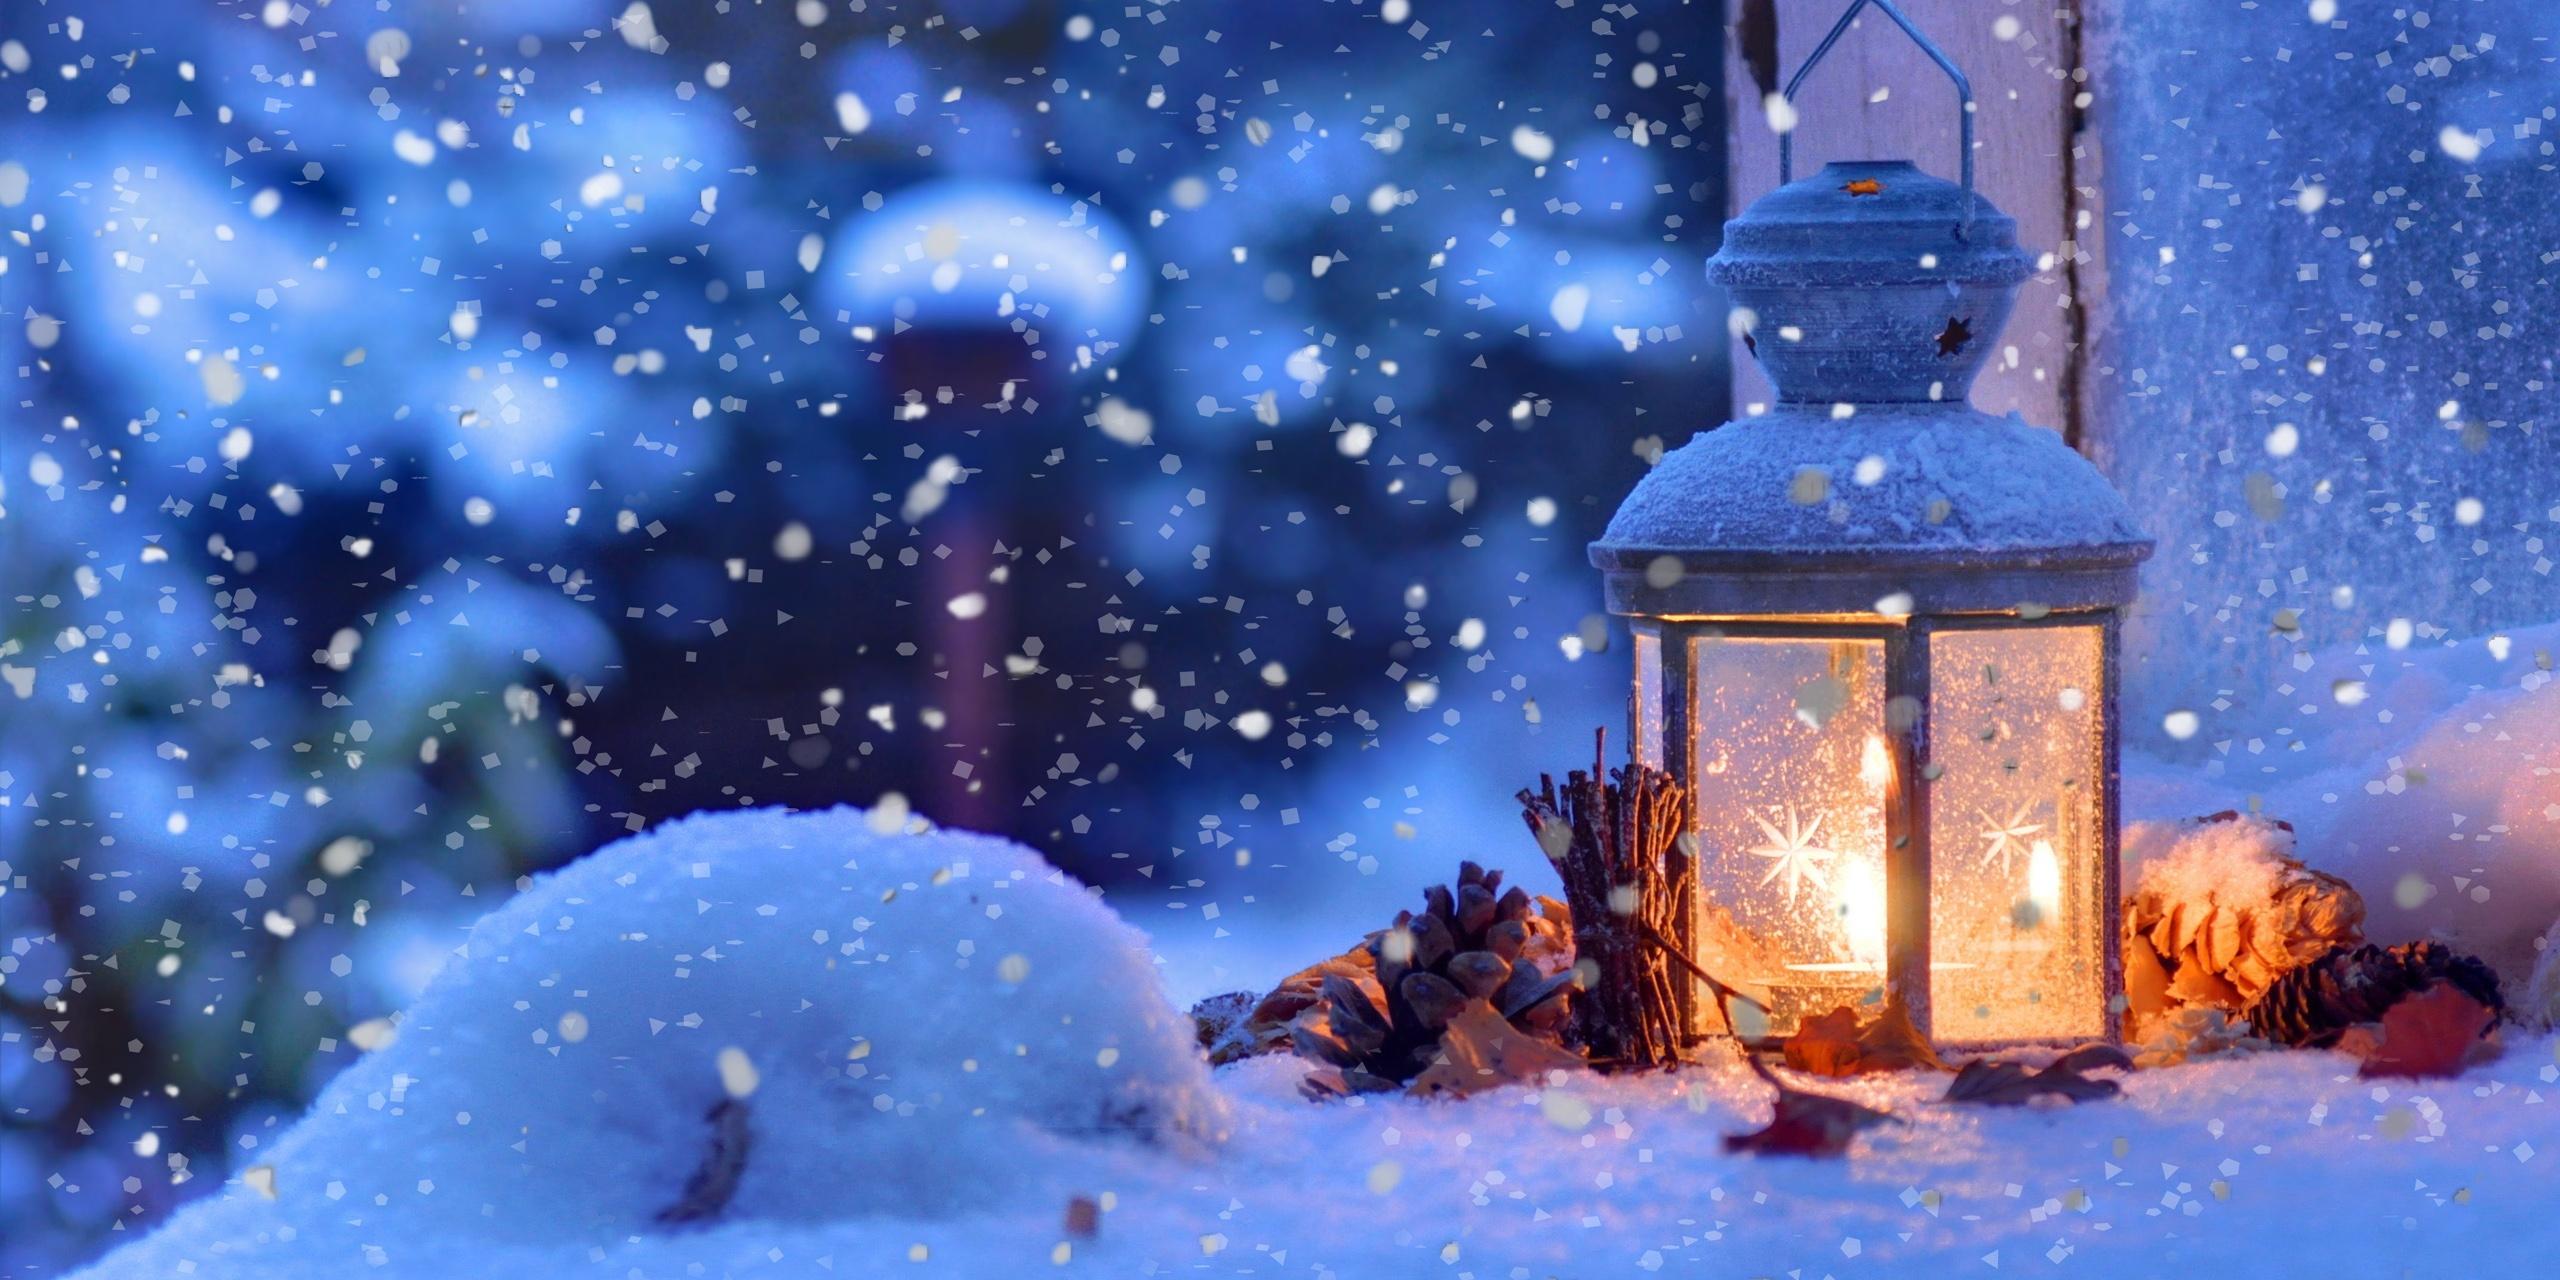 Auf dem Titelbild des diesjährigen Adventskalenders ist eine verschneite Laterne, vor einem Fenster in weihnachtlicher Abendstimmung zu sehen.